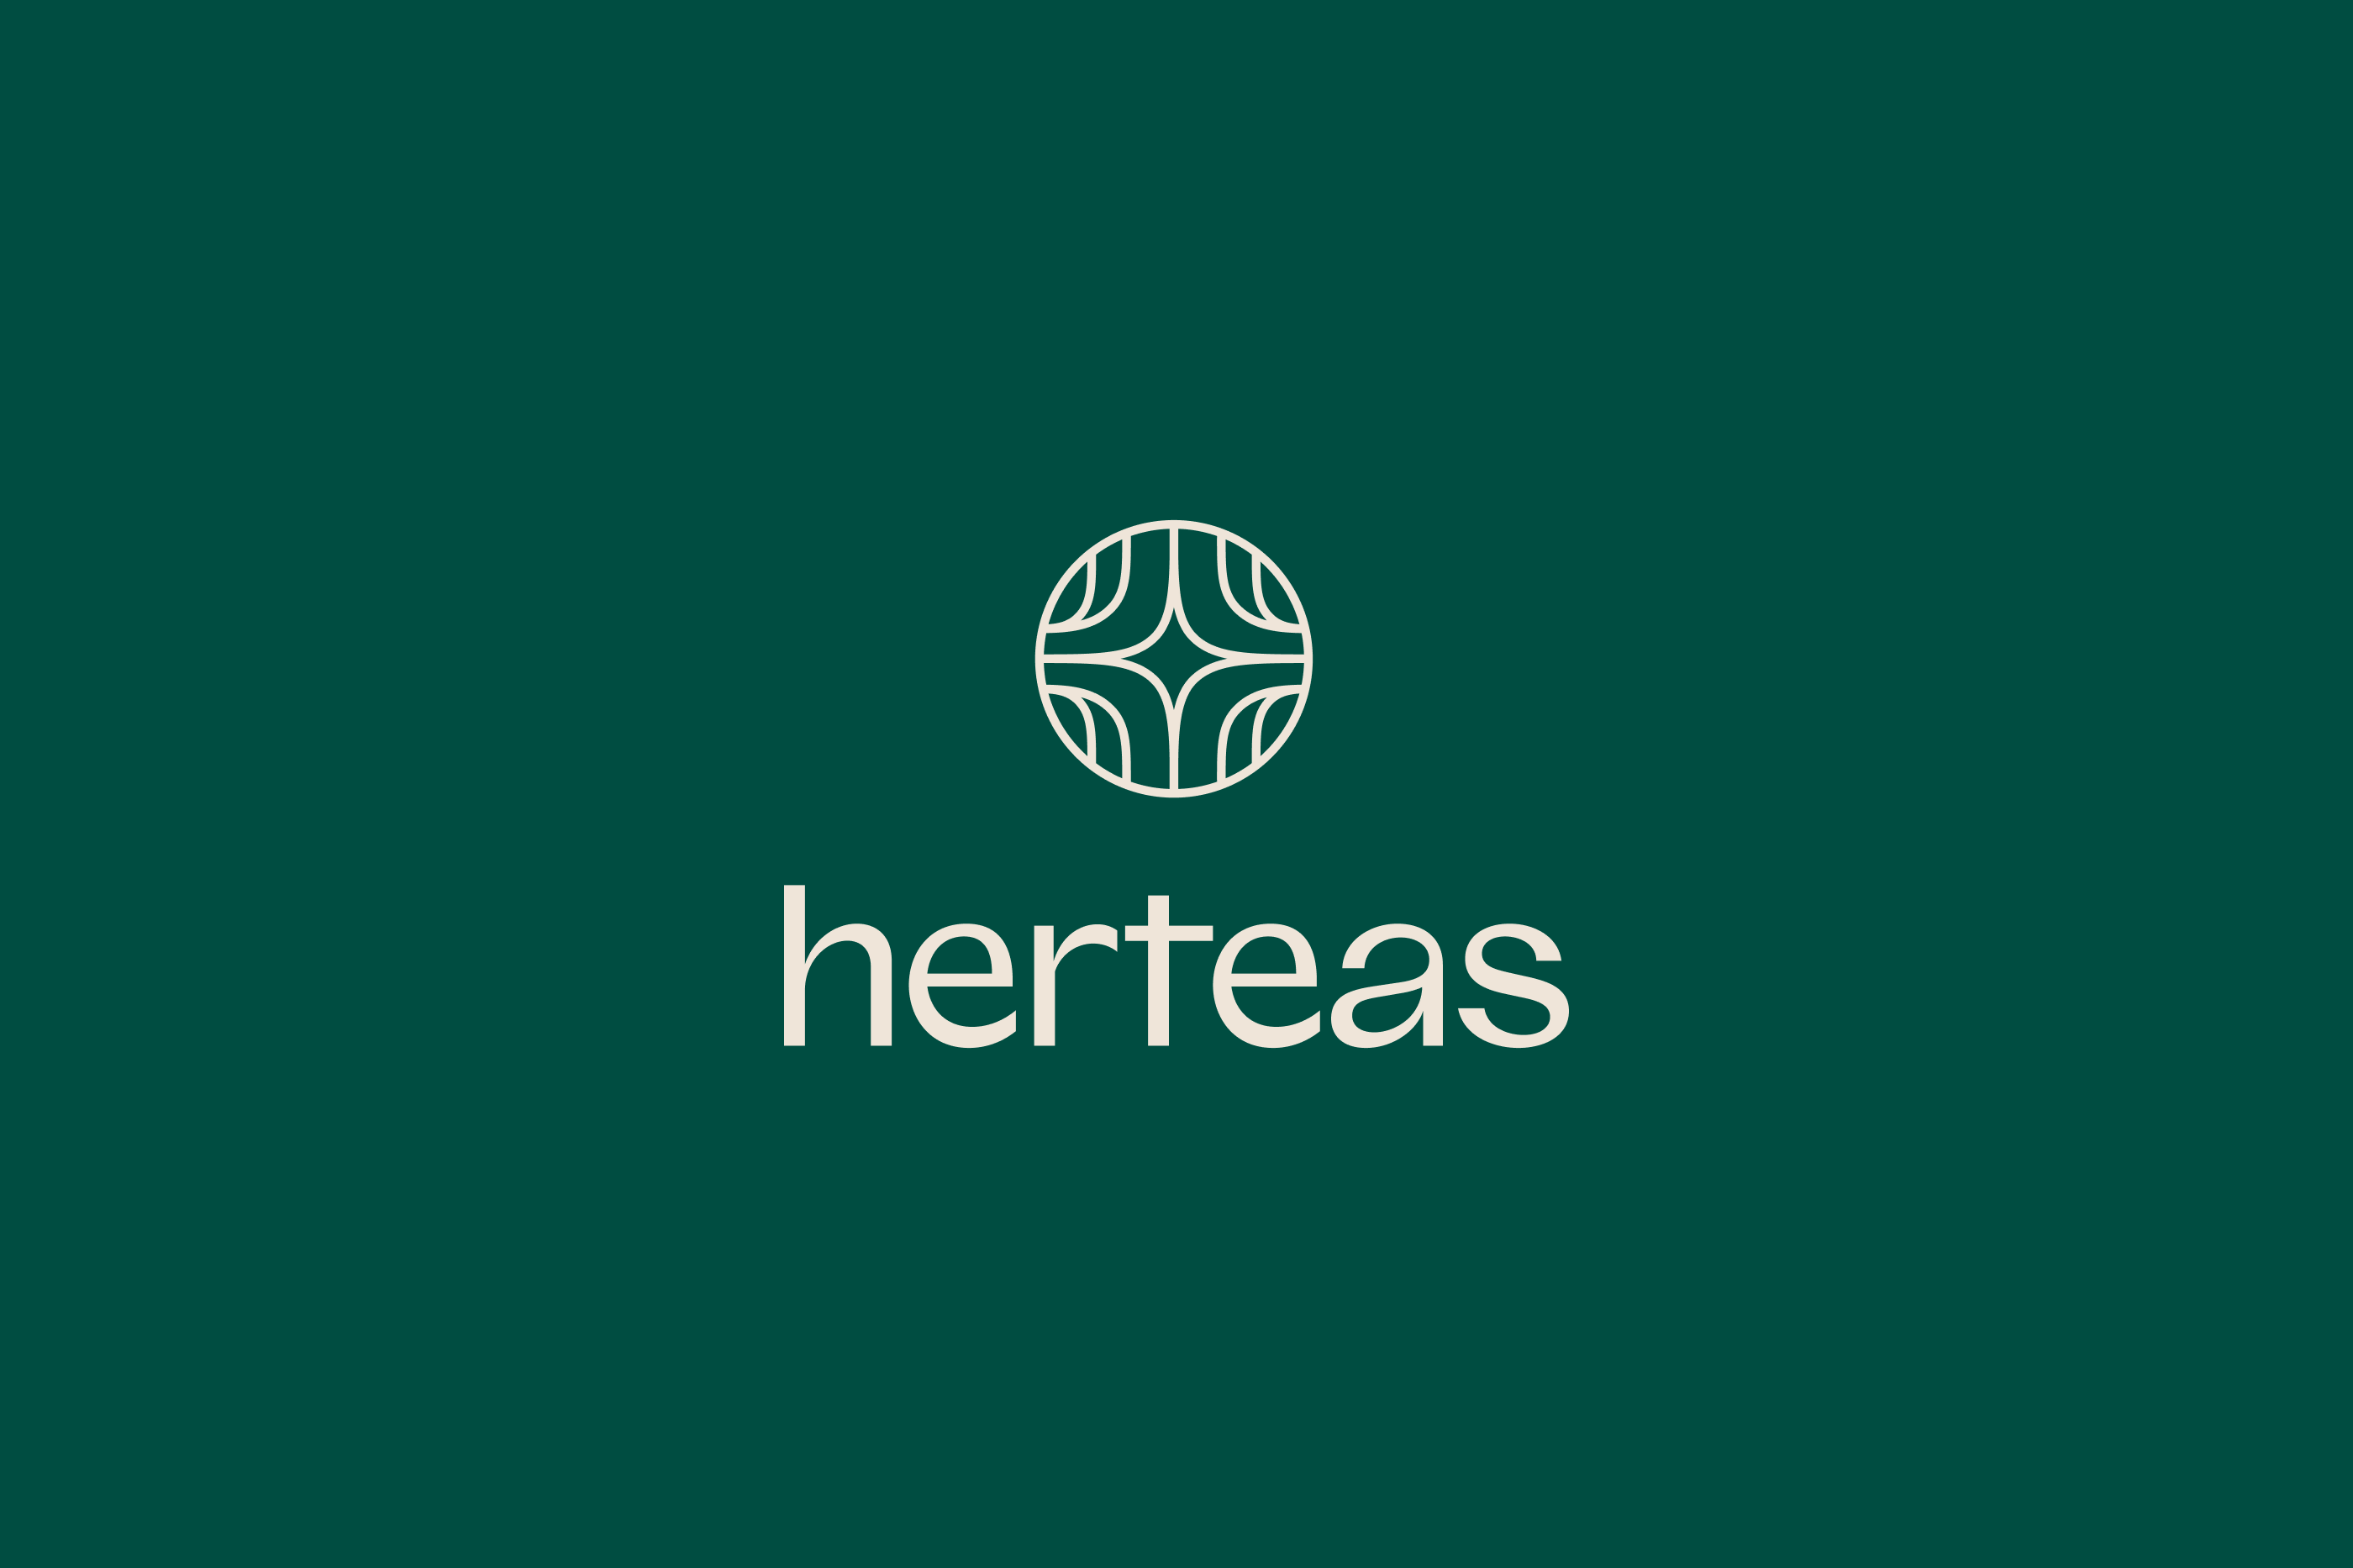 herteas logo design tubik arts